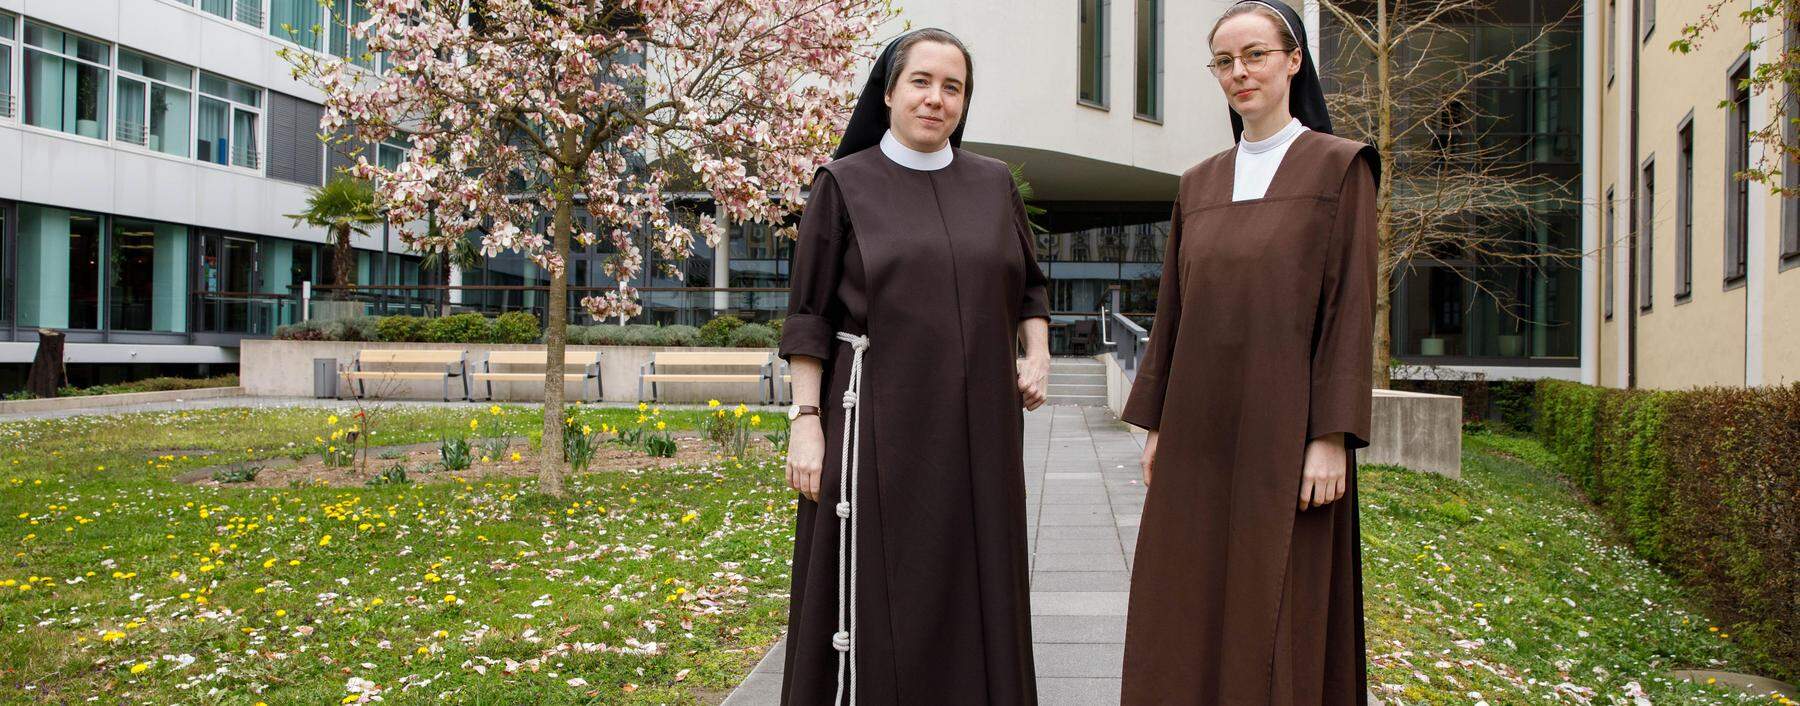 Schwester Helena Fürst (l.) und Schwester Mirjam Maria Schwaiger teilen Momente ihres Alltags mit ihren Followern auf Instagram.